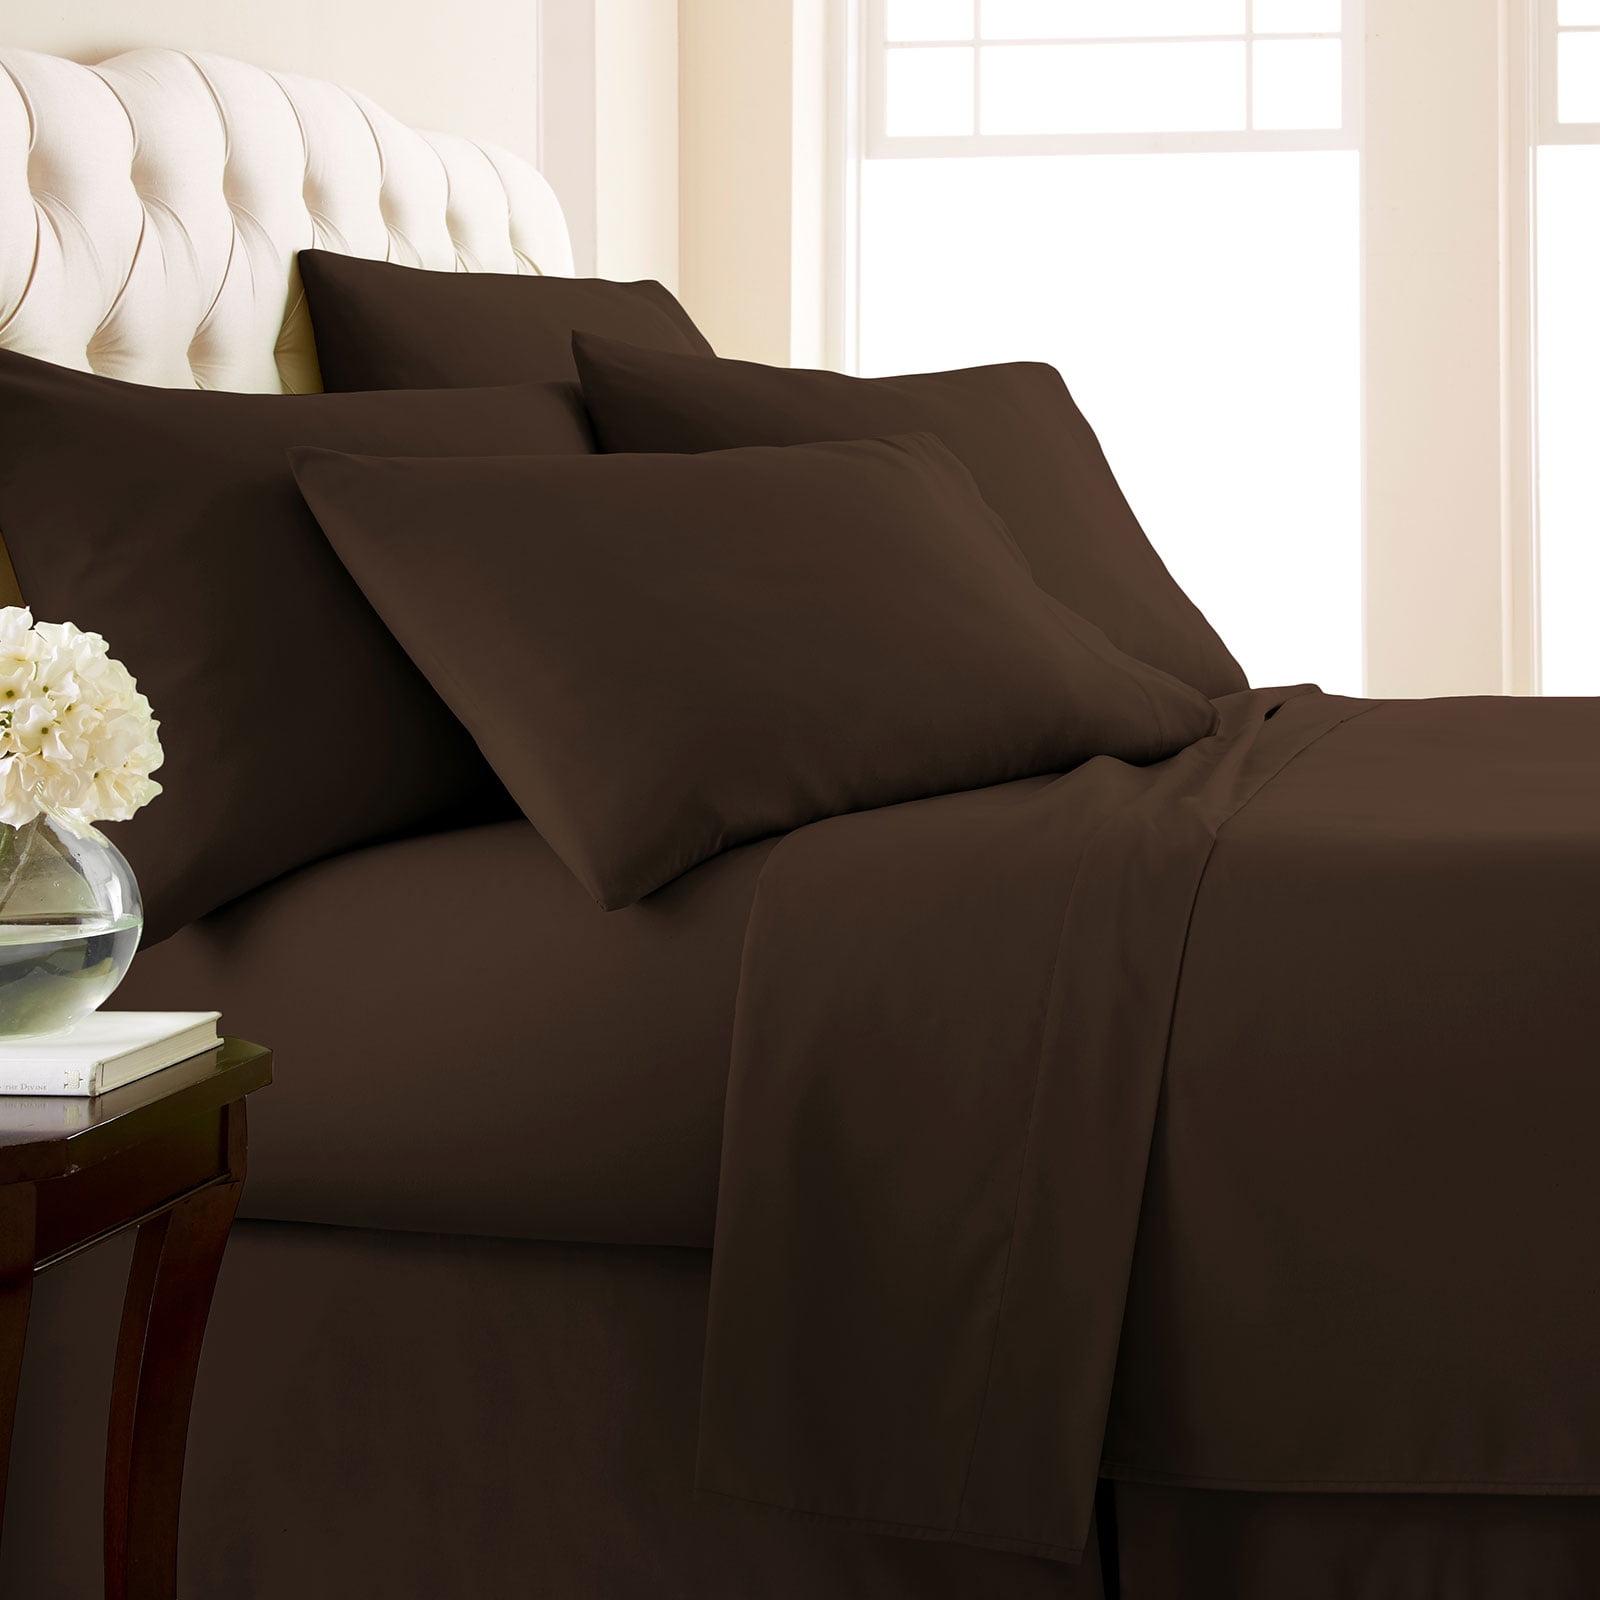 Details about   160 TC Floral Bedsheet Double Bedding Multicolor Home Décor Pillowcase Bedspread 